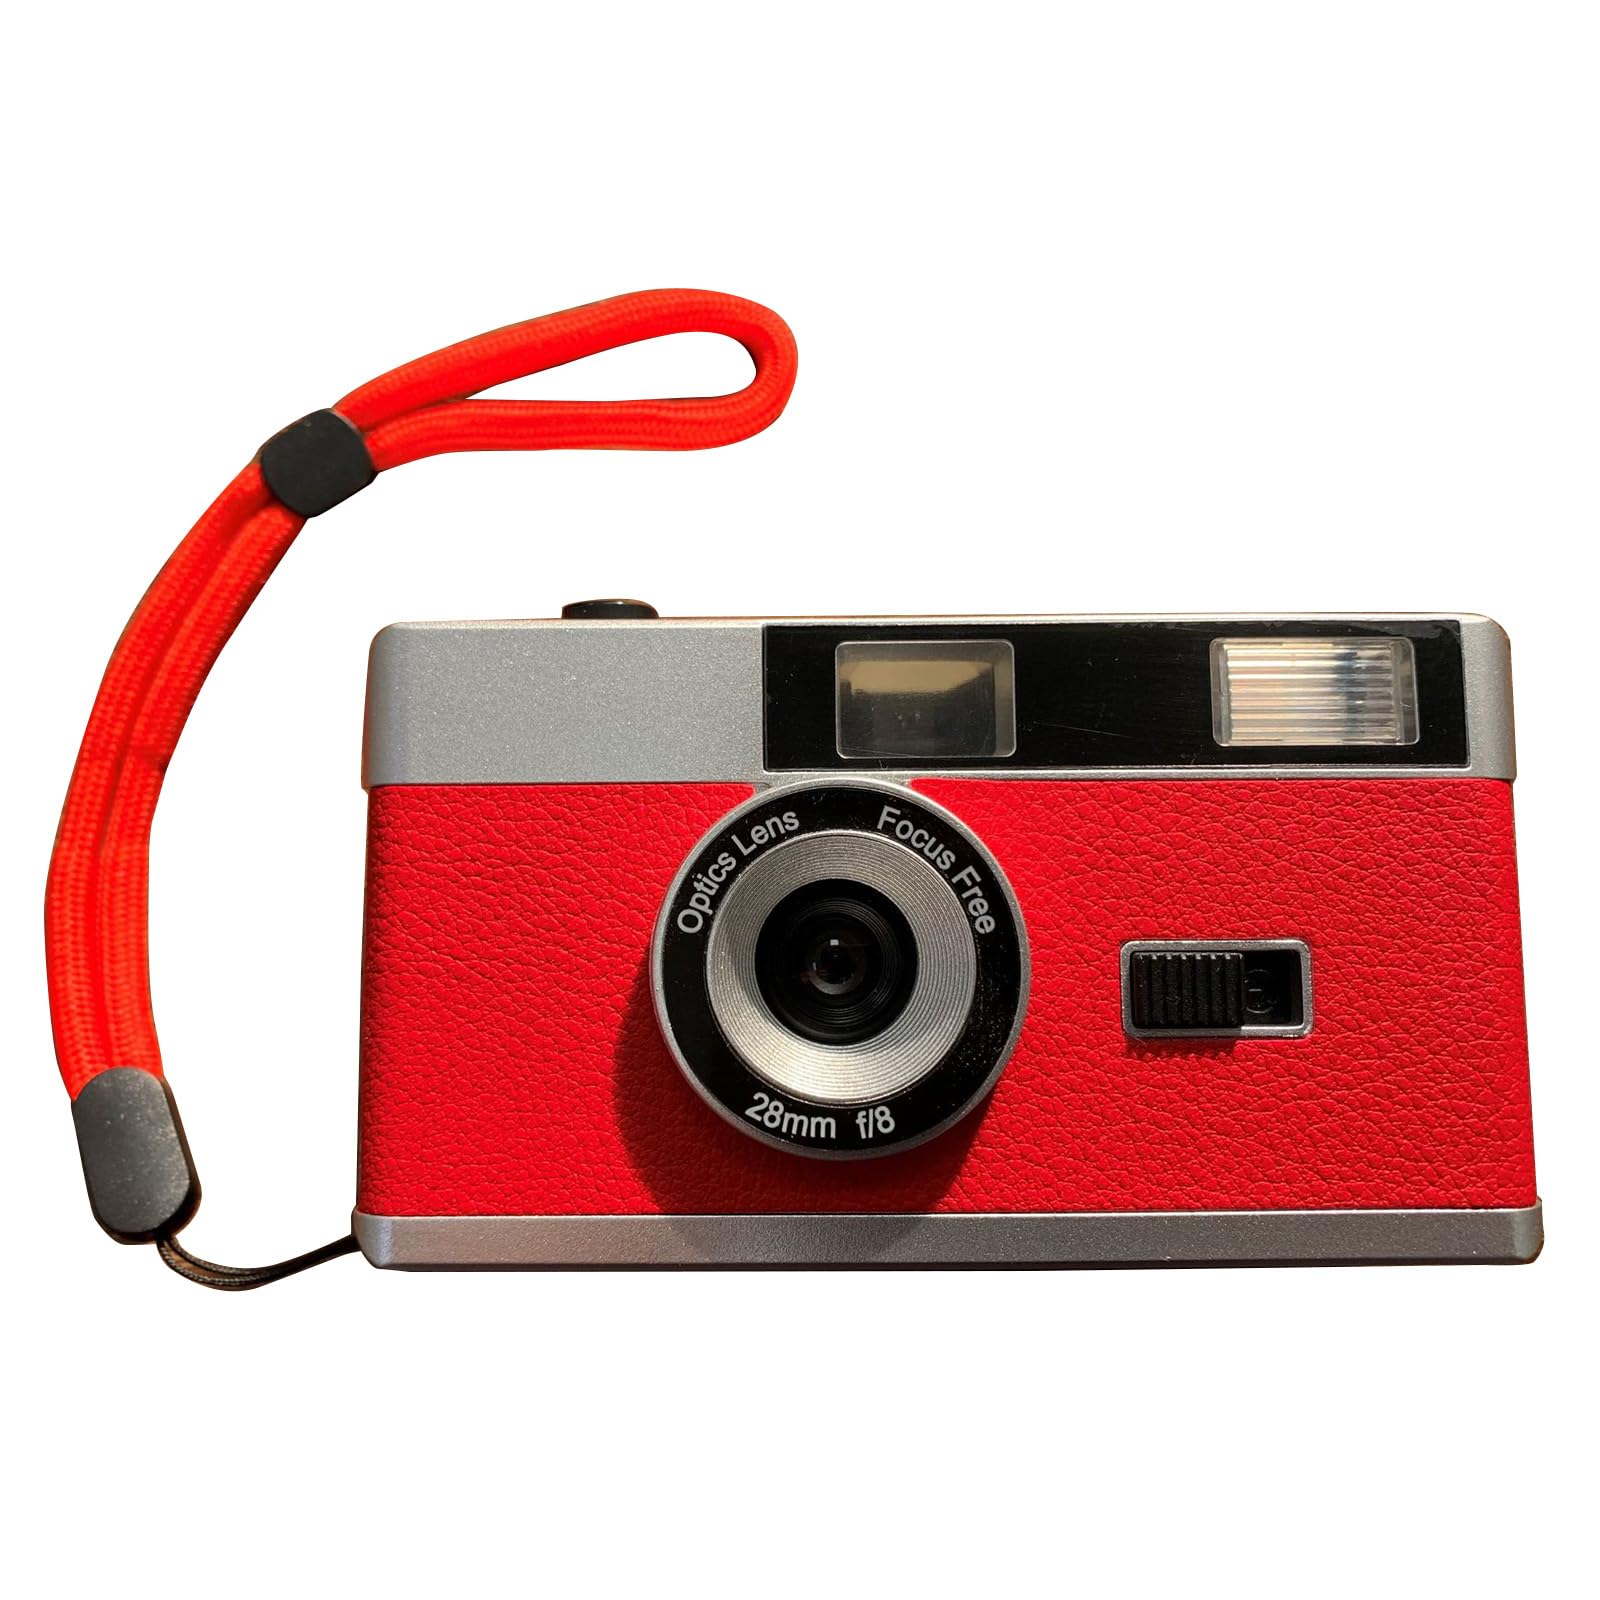 FENOHREFE 35mm Film Kamera Retro Kamera Kostenlose Wiederverwendbare Eingebaute Einfach Zu Verwenden Für Fotografie Enthusiasten 35mm Film Kamera